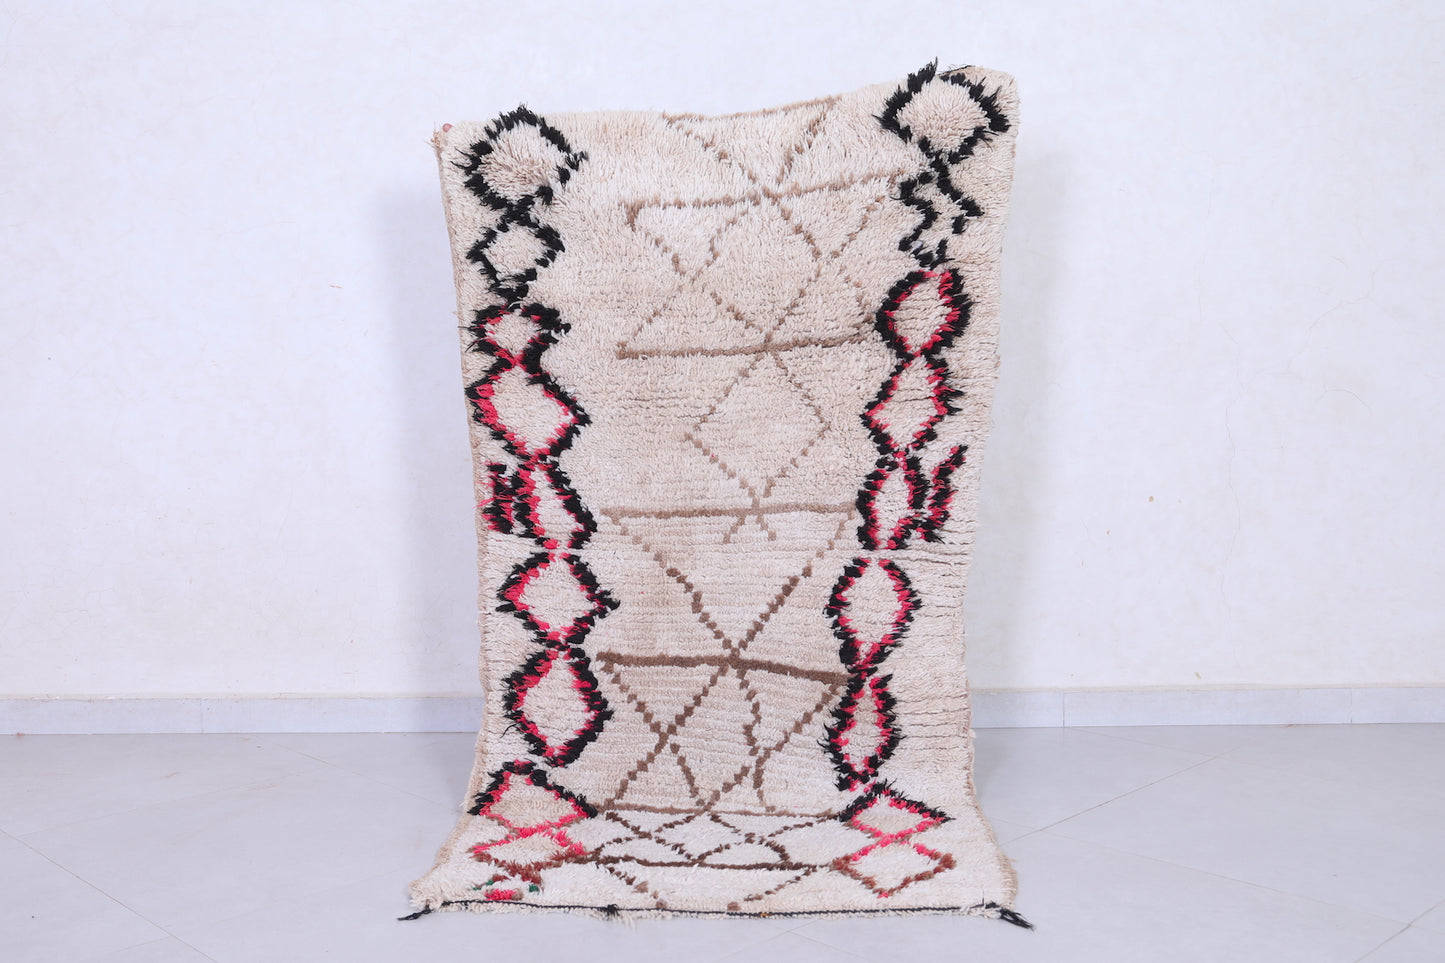 Vintage handmade moroccan berber runner rug 2.8 FT X 5.5 FT